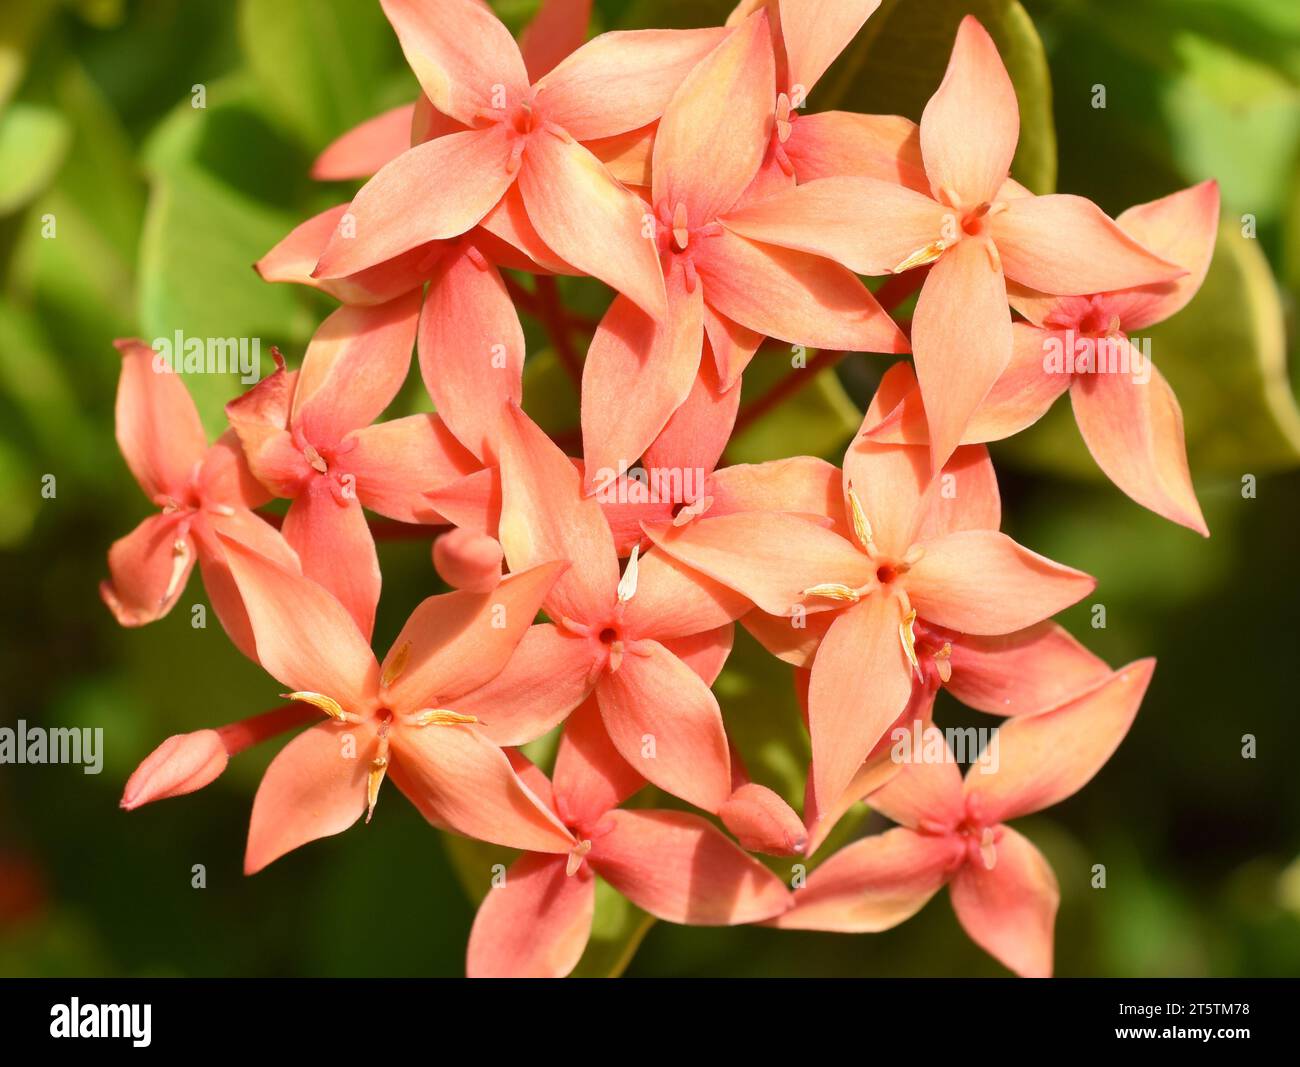 Jungle geranium Ixora coccinea closeup on orange coloured flowers Stock Photo